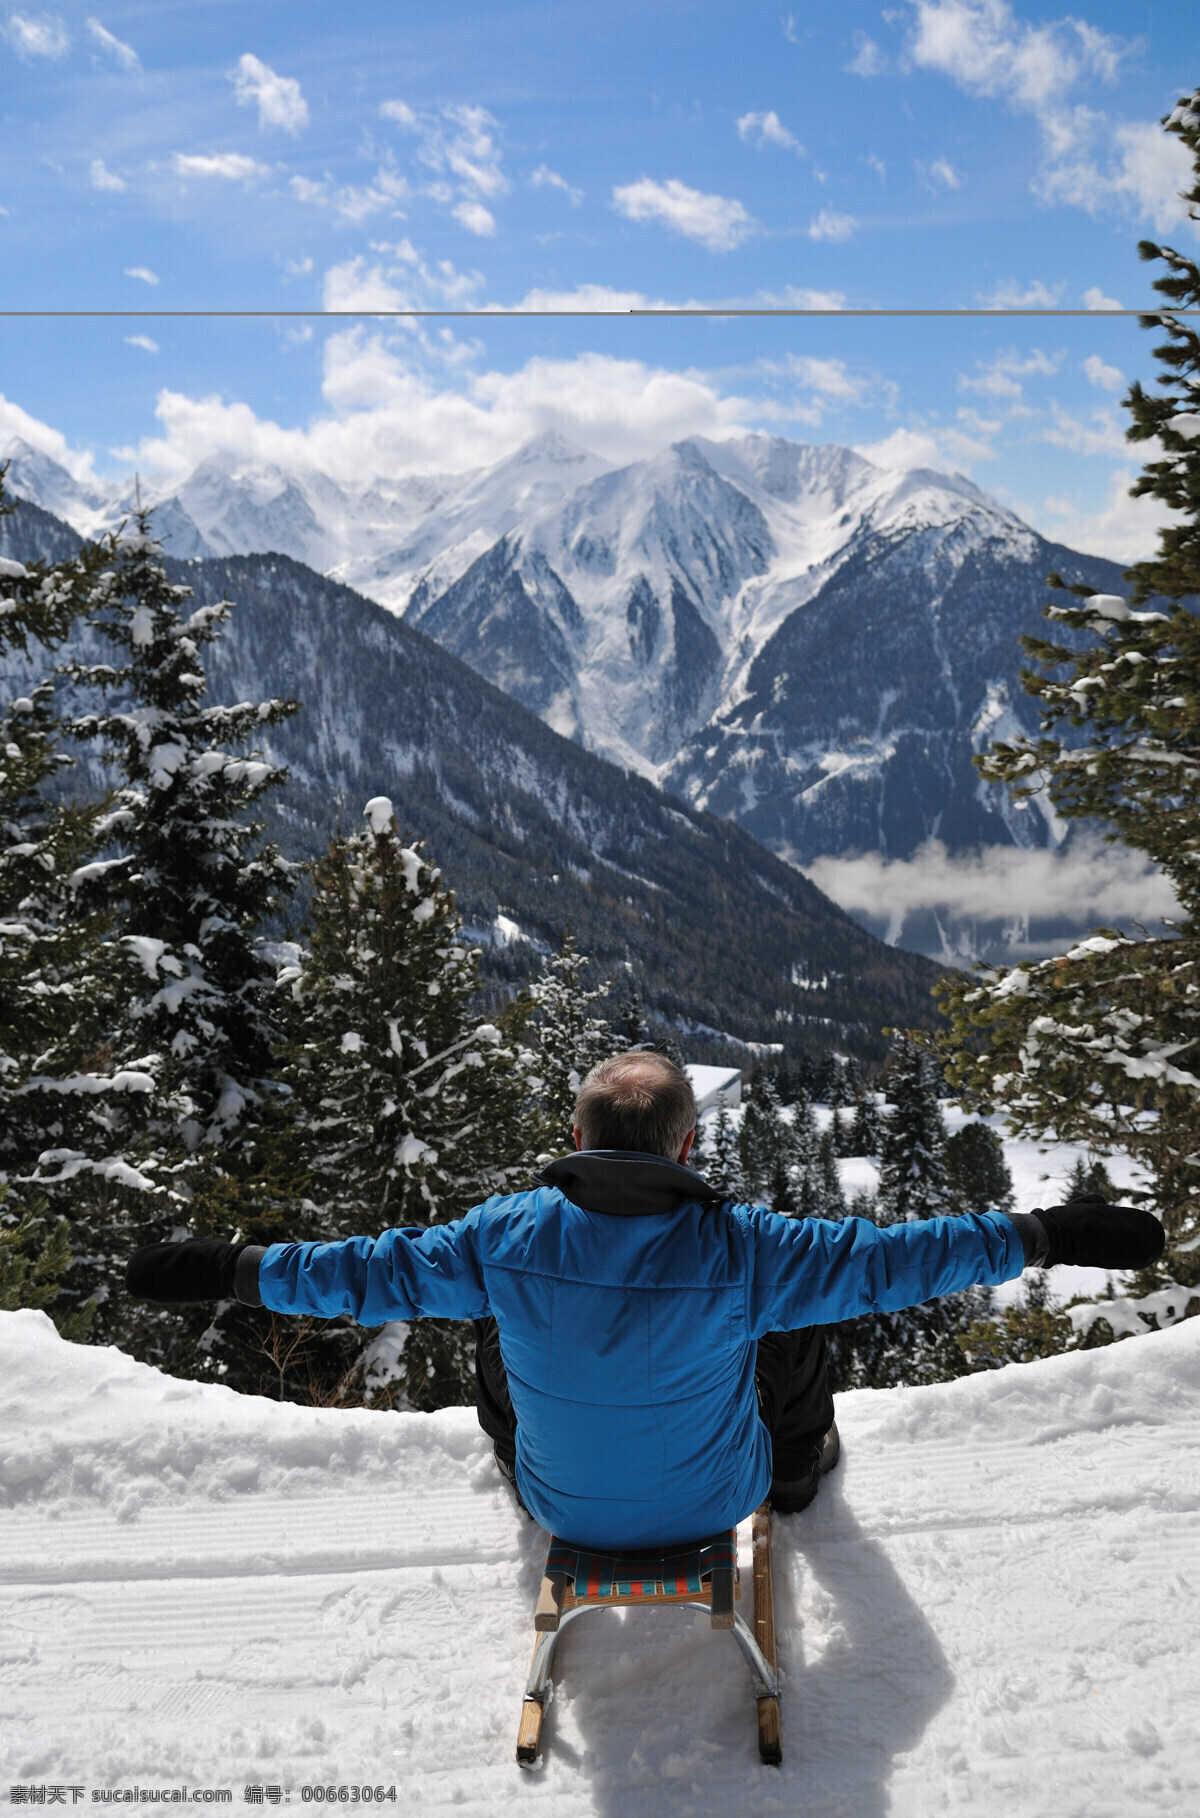 滑雪高清图片 滑雪 雪地 冬天 冬季 雪山 山川 树木 蓝天 白云 体育 运动 人物摄影 文化艺术 体育运动 高清图片